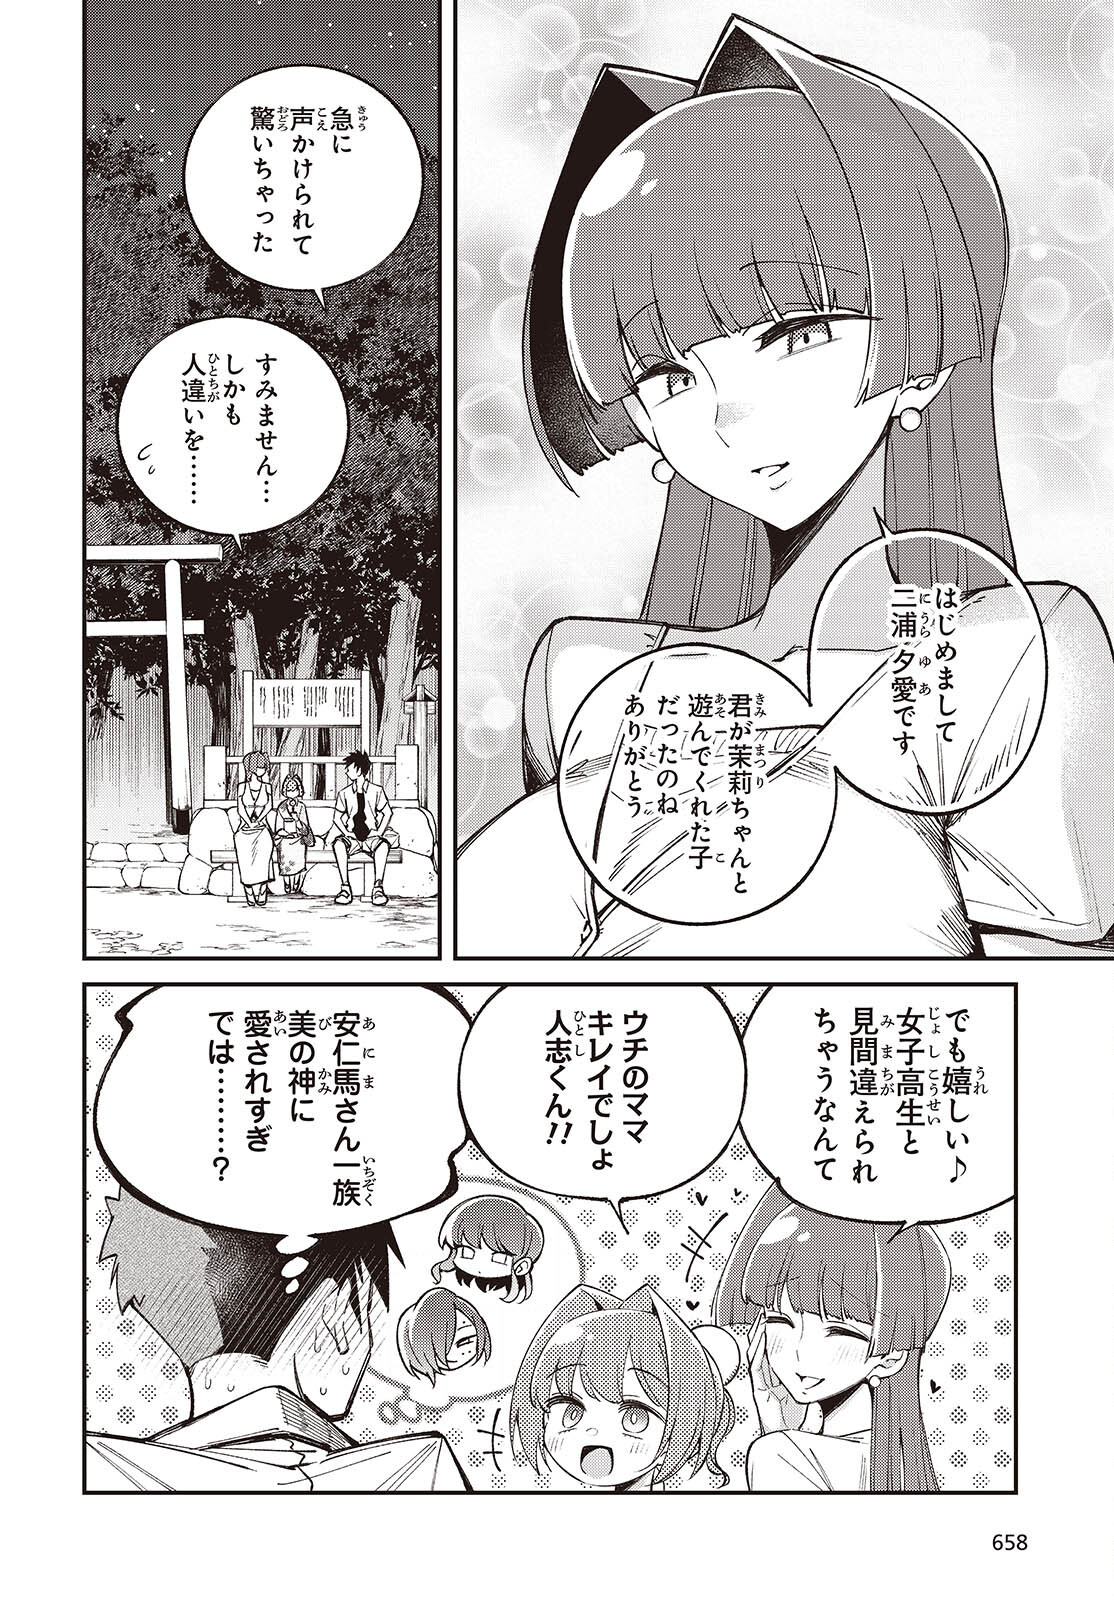 Ikimono-suki no Anima-san ni wa Honno Choppiri Doku ga aru - Chapter 10 - Page 8